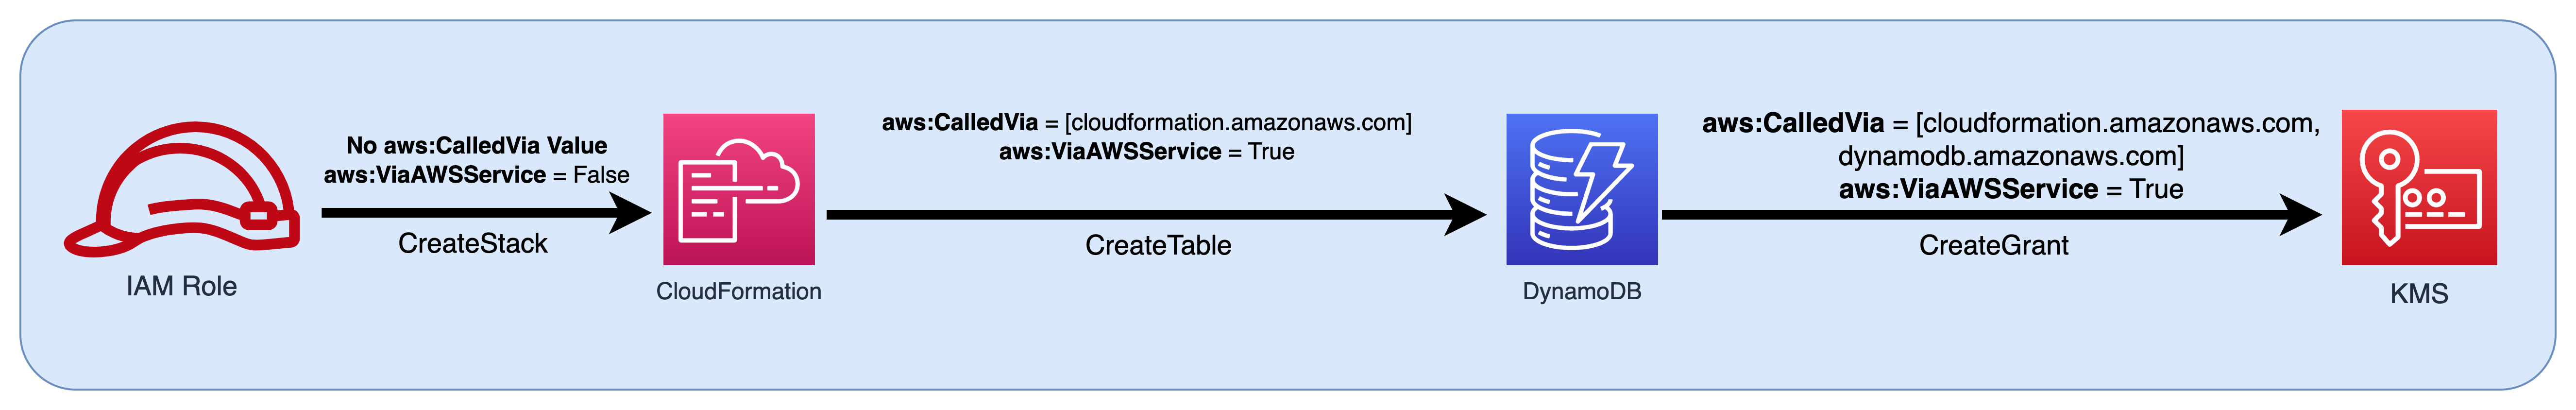 Ein Flussdiagramm einer IAM-Rolle, die als Principal an DynamoDB übergeben wird CloudFormation und anschließend die Bedingungsschlüsselwerte an DynamoDB und weitergibt. AWS KMS